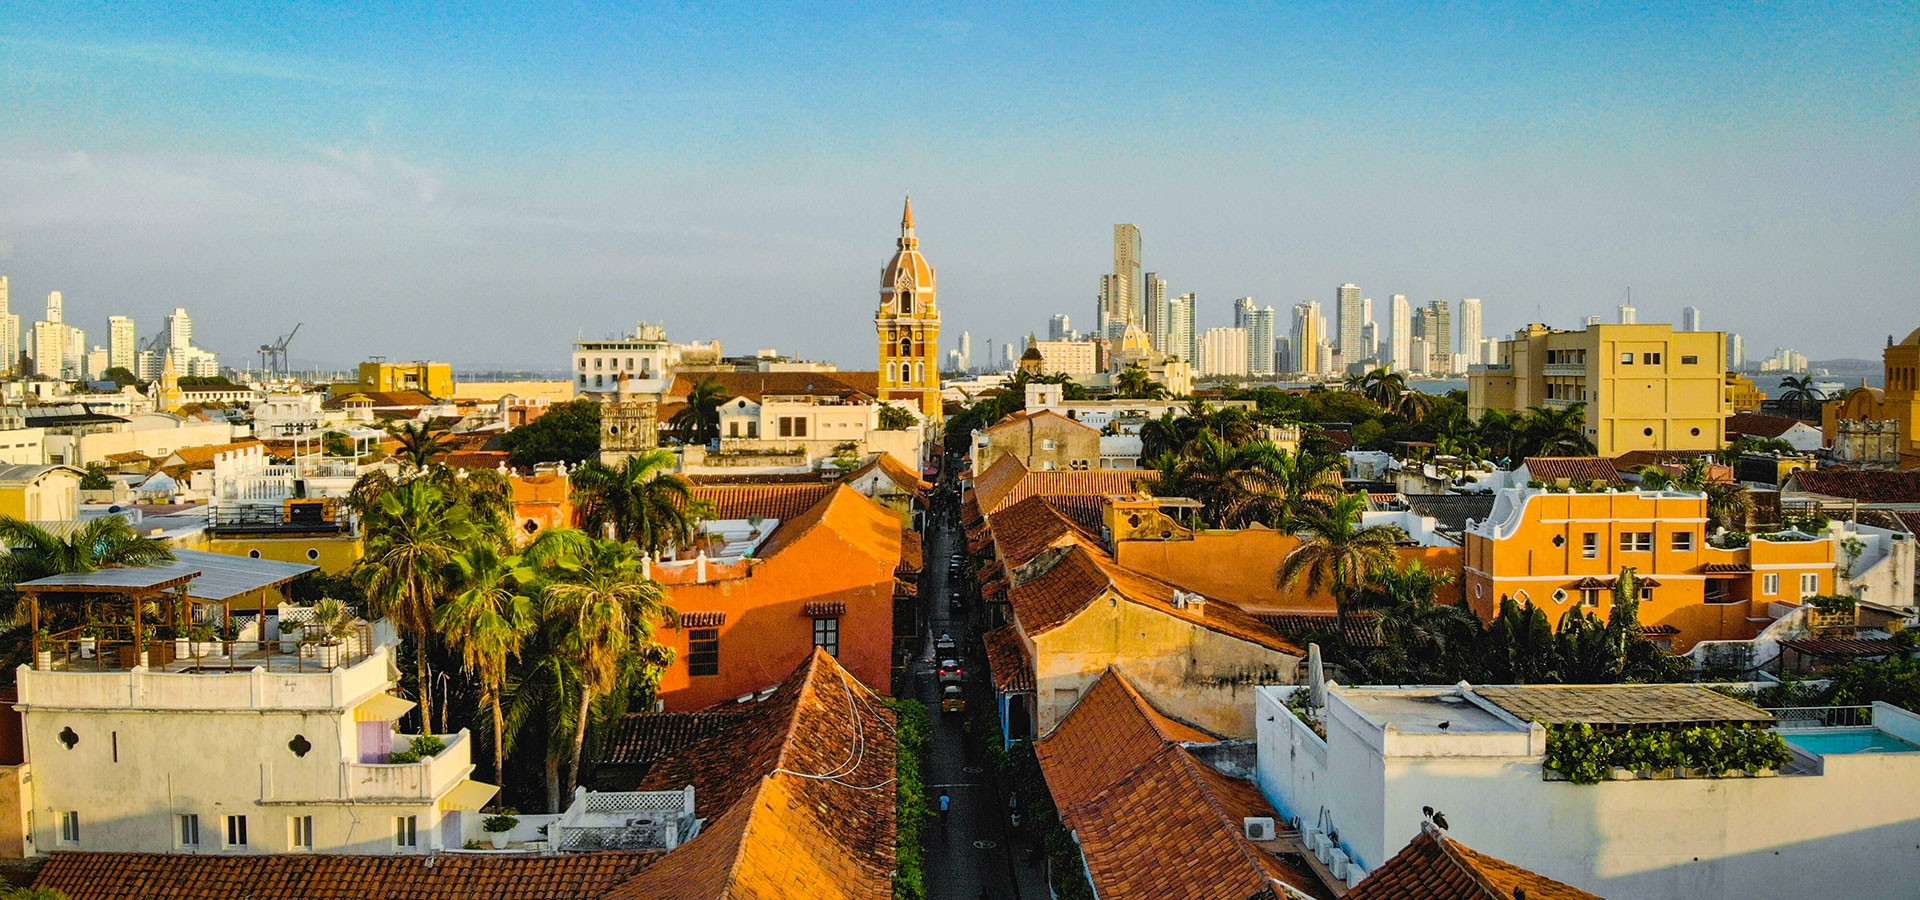 Cartagena das Índias, a joia colonial da Colômbia